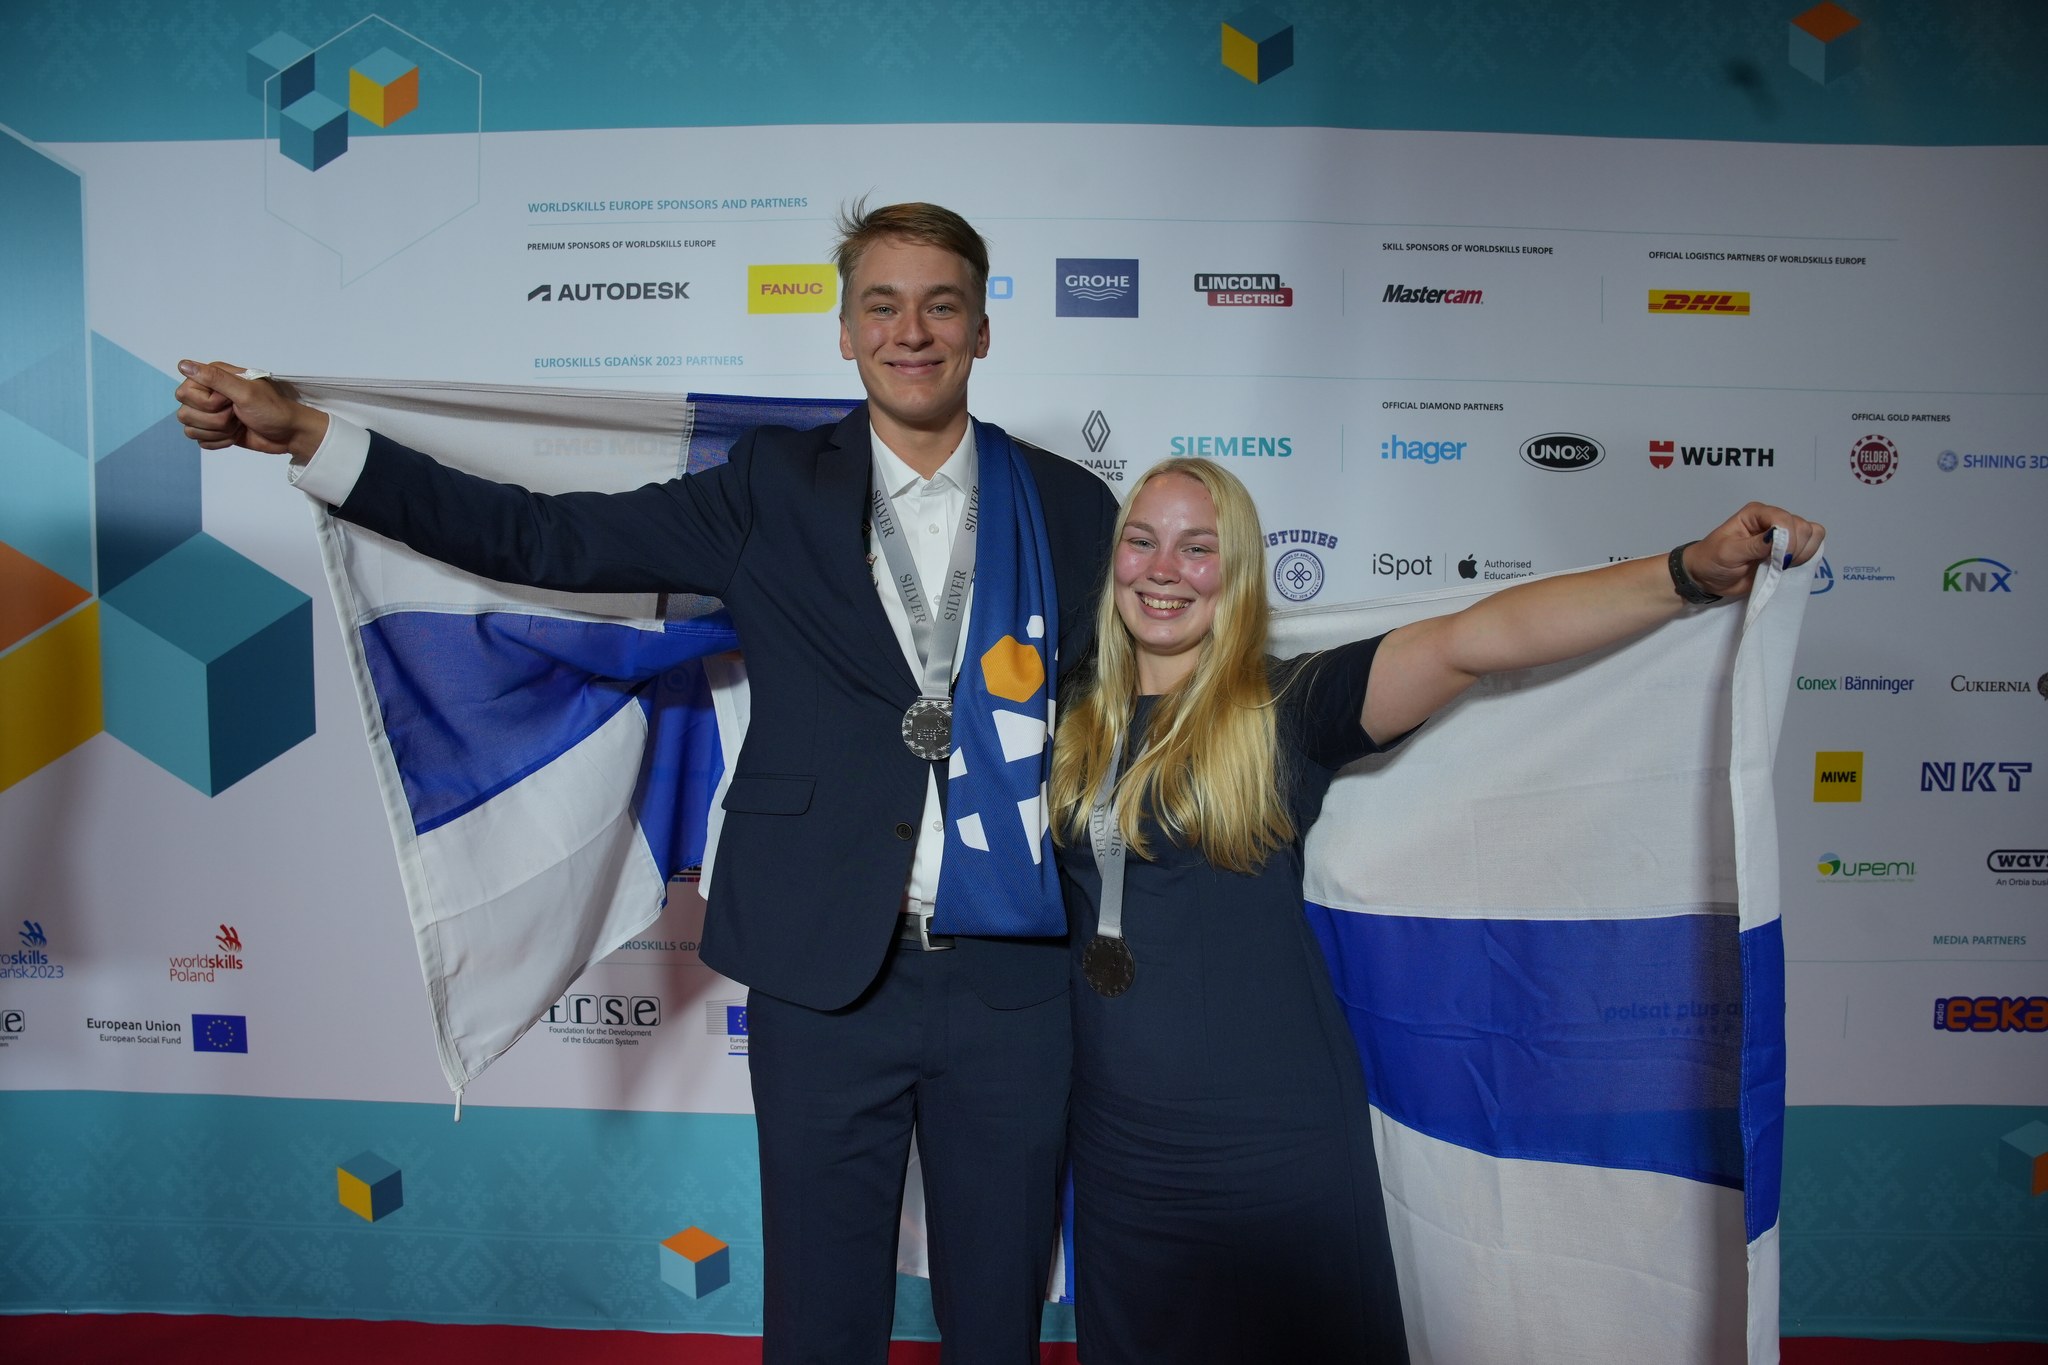 Kaksi nuorta hienoissa puvuissa pitävät Suomen lippua ja ovat iloisia.